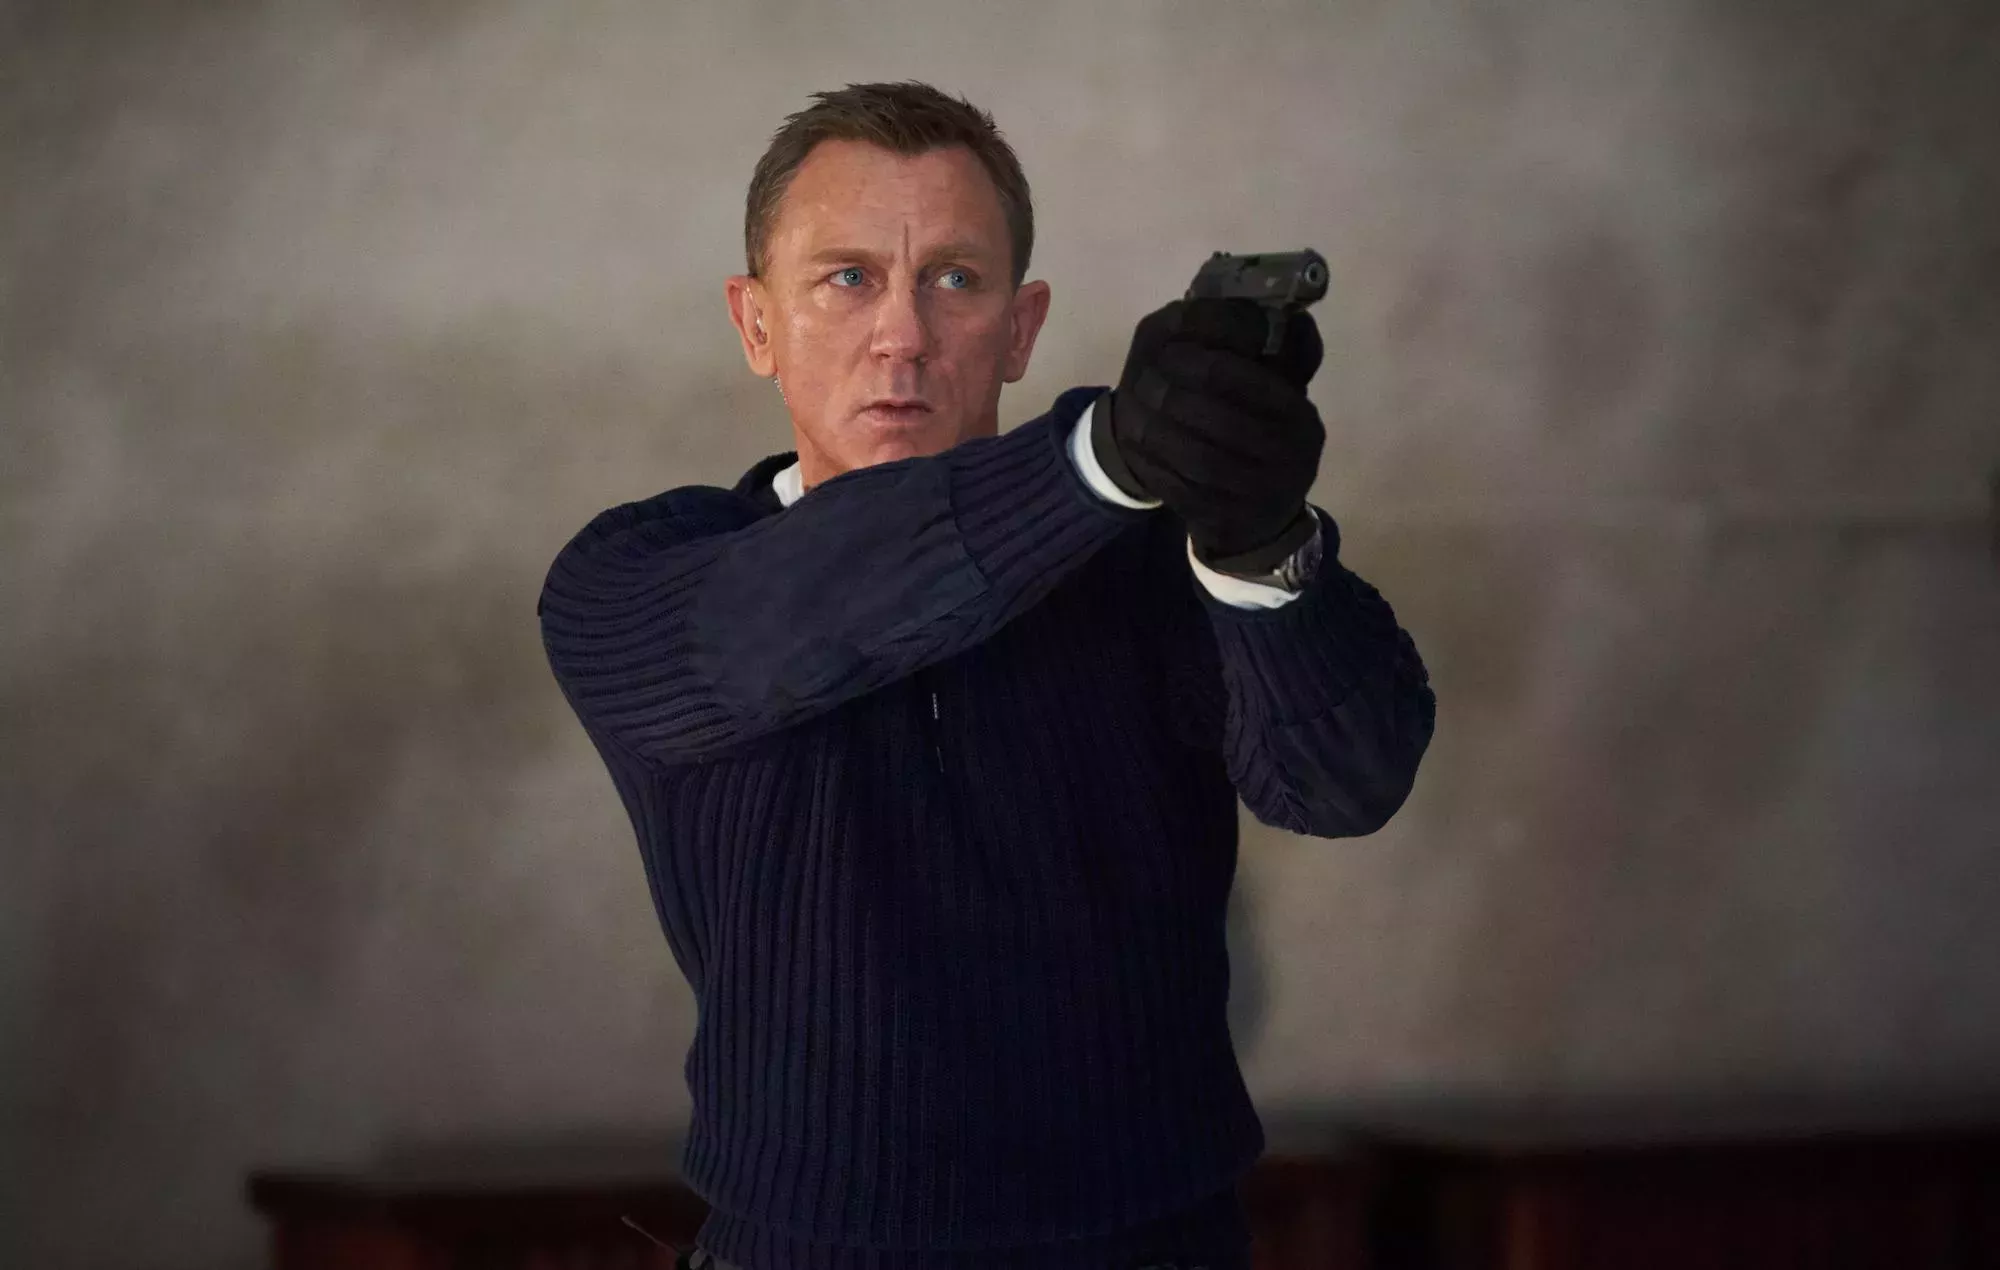 El ex director de James Bond dice que era escéptico sobre que Daniel Craig interpretara a 007